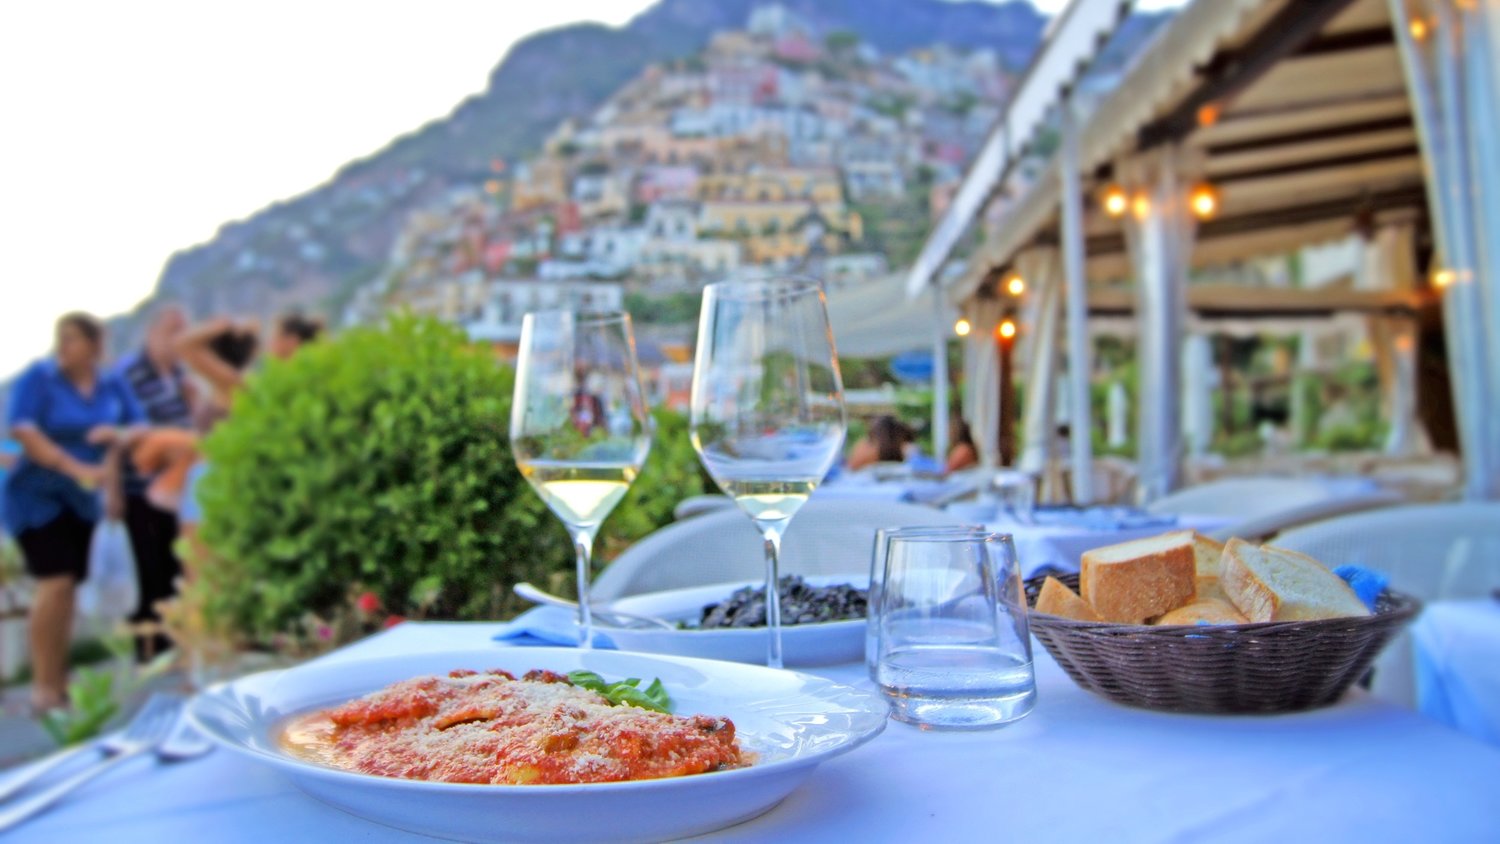 Italian cuisine varies by region